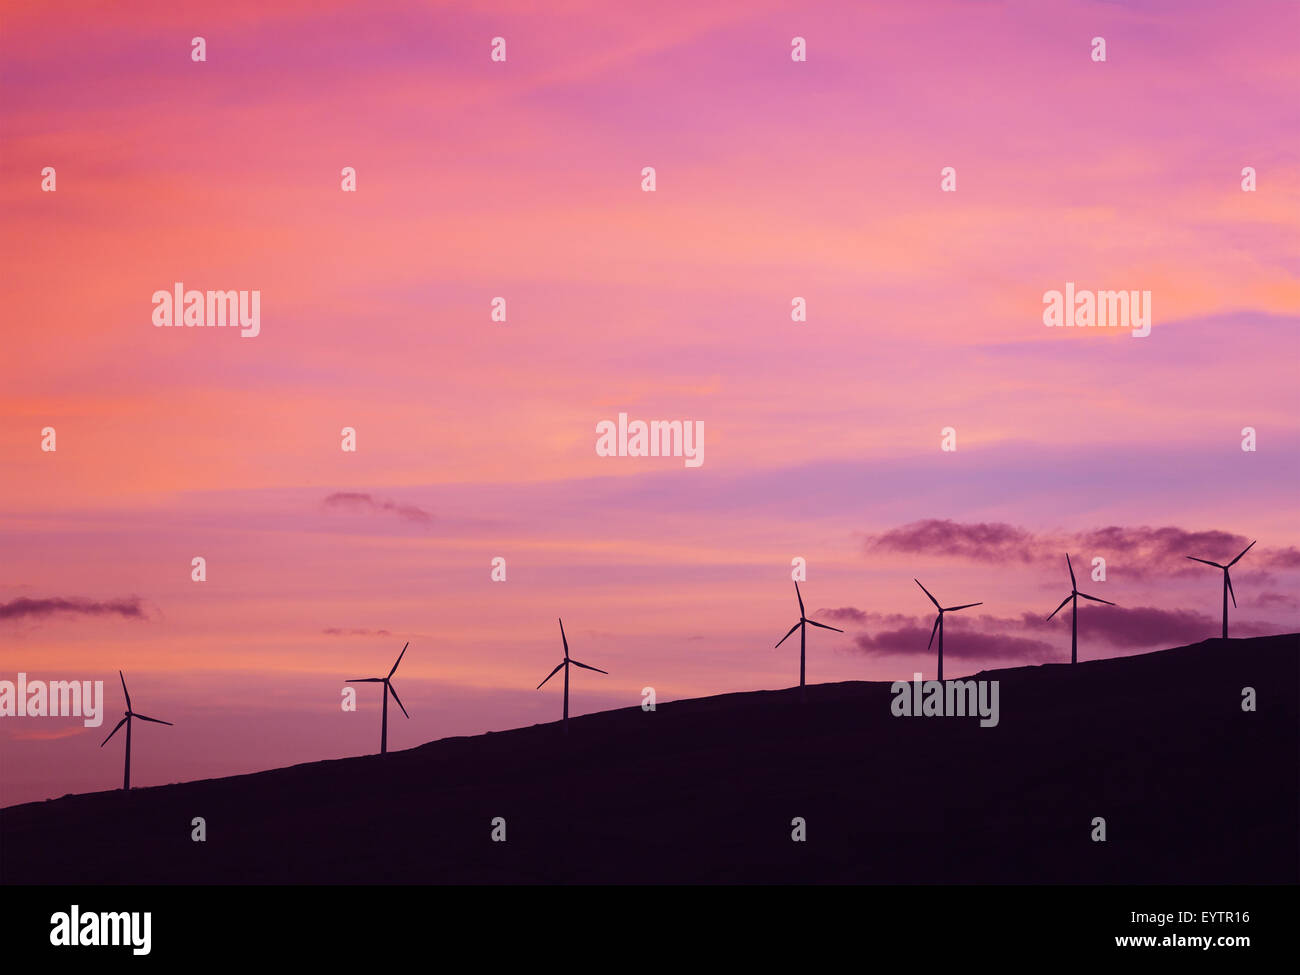 Windmühlen bei Sonnenuntergang. Grüne Energie-Zukunft. Saubere Technologien. Stockfoto